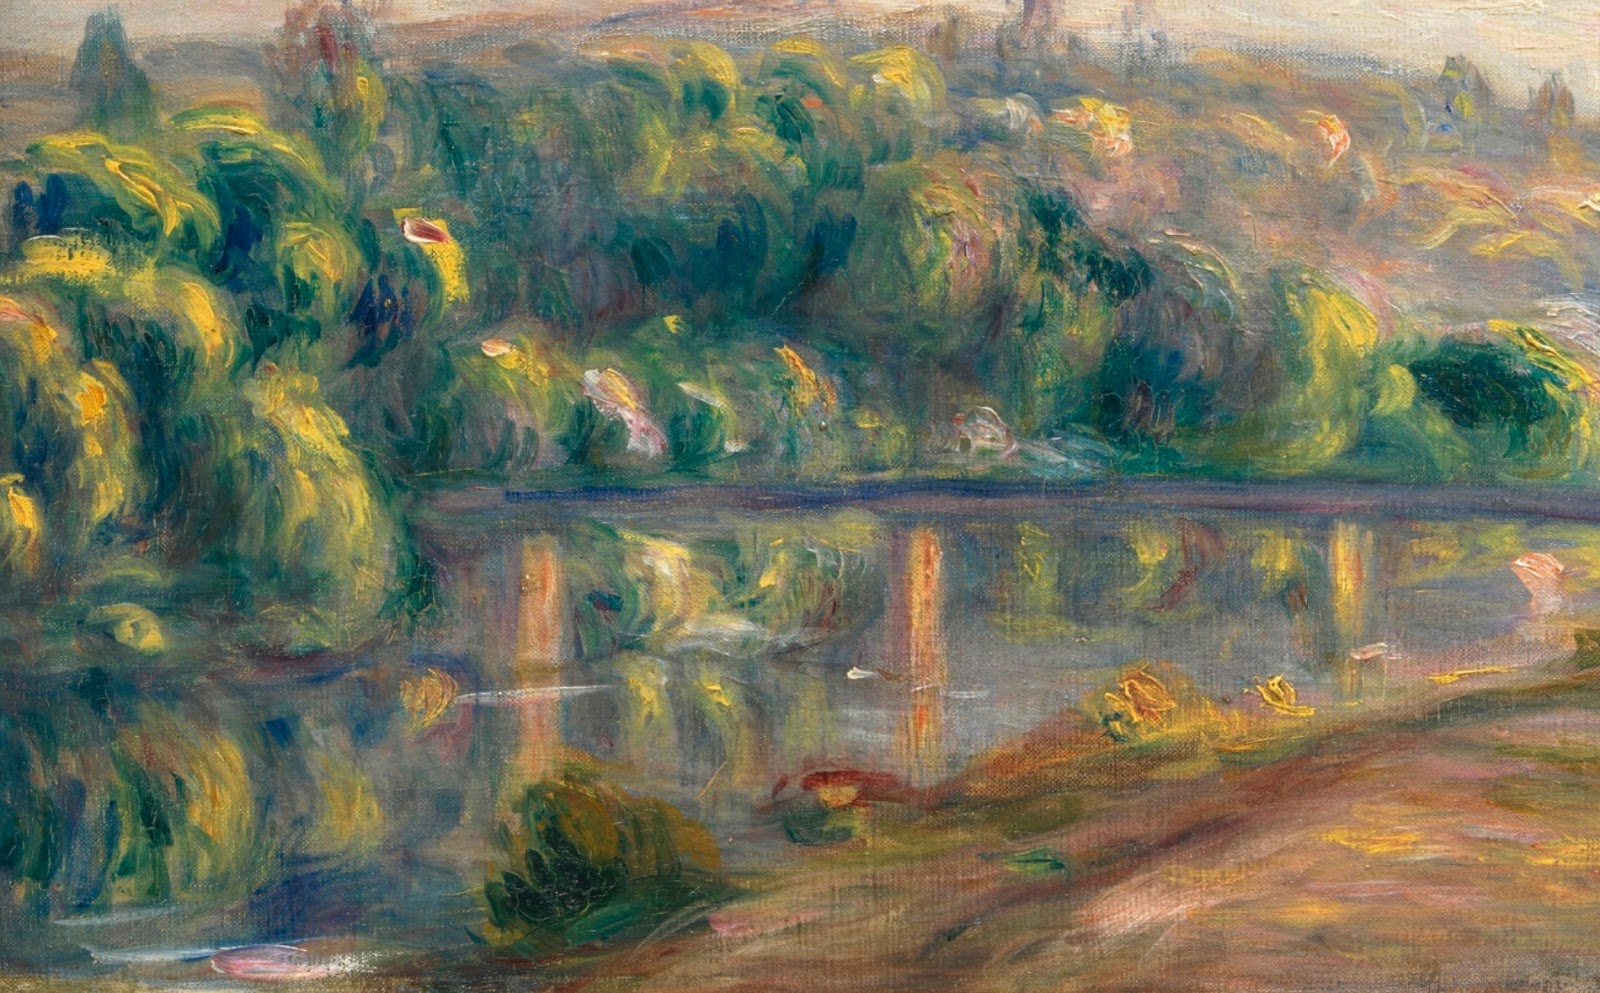 Pierre+Auguste+Renoir-1841-1-19 (827).jpg